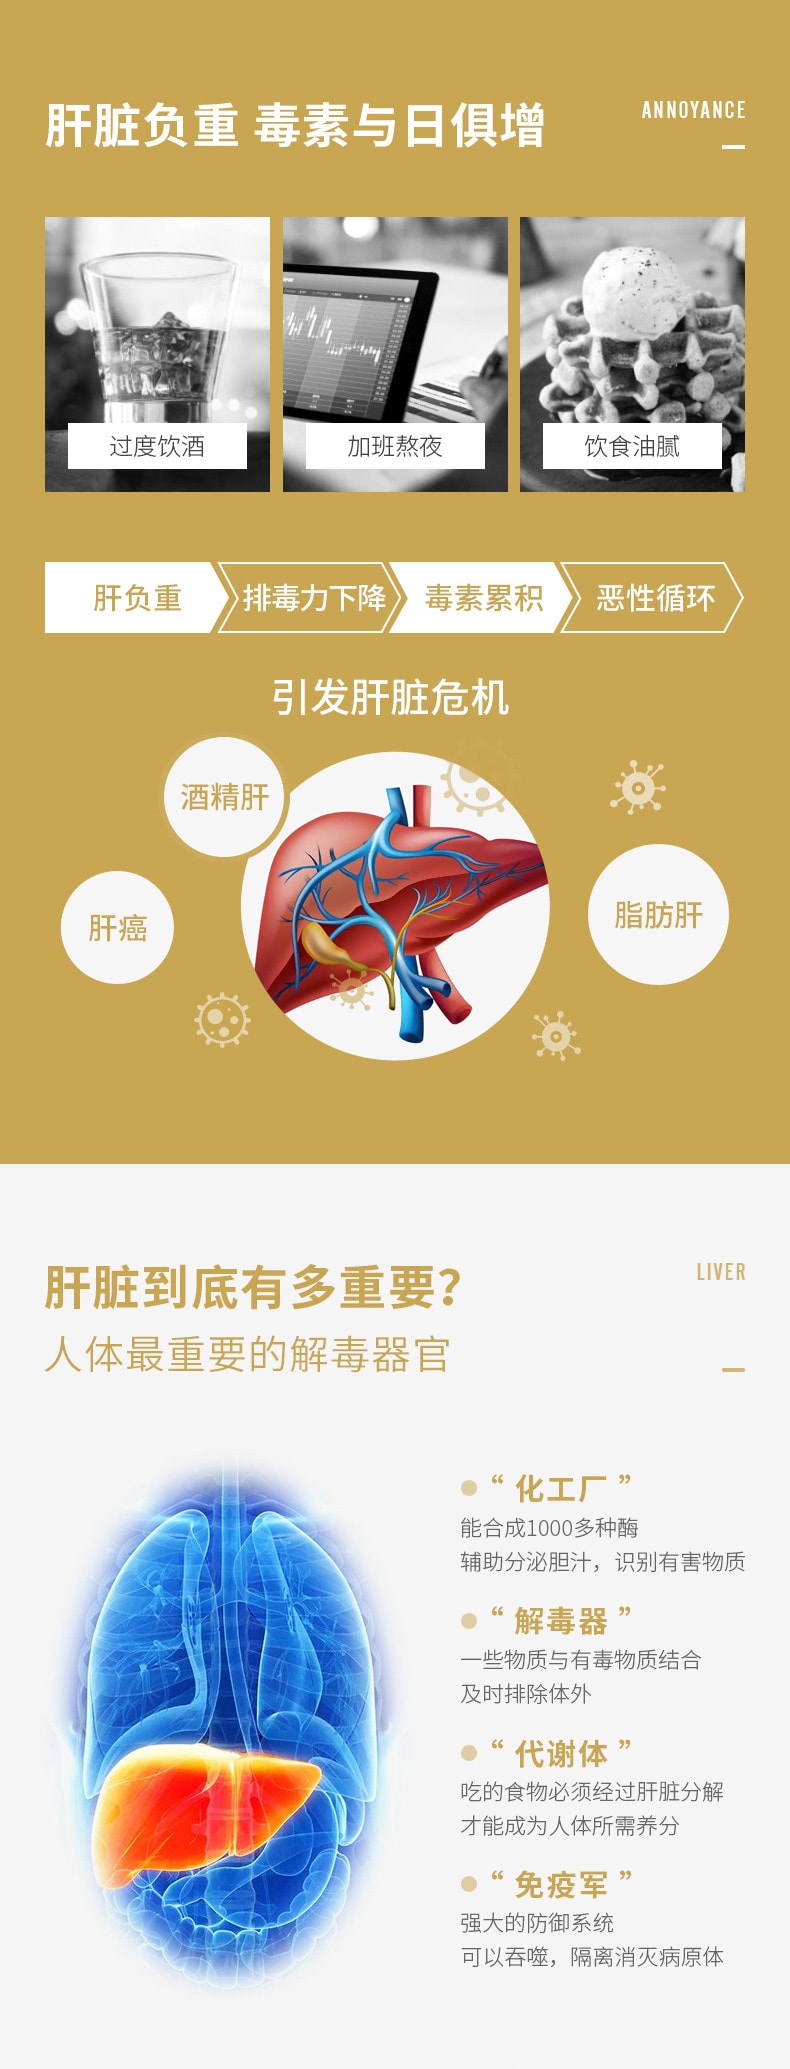 守護肝臟的黃金盾 | PILLBOX薑黃解酒片金裝加強版 | 5粒護肝神器